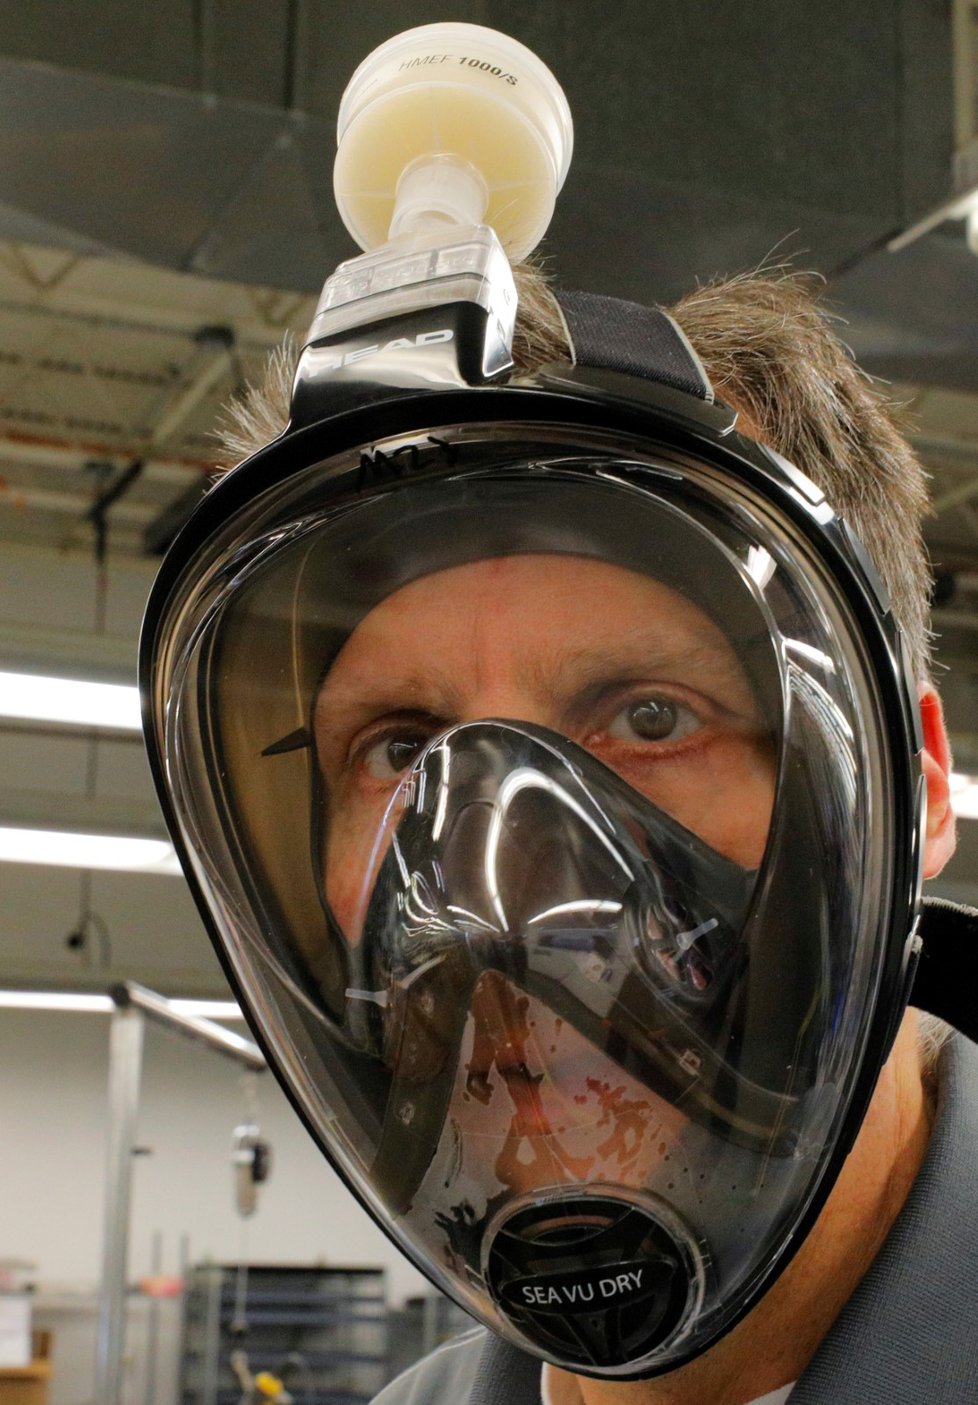 Už i do USA doputoval český zlepšovák na upravené šnorchlovací masky, které po nasazení speciálního filtru fungují jako dokonalá ochrana před šířením viru.